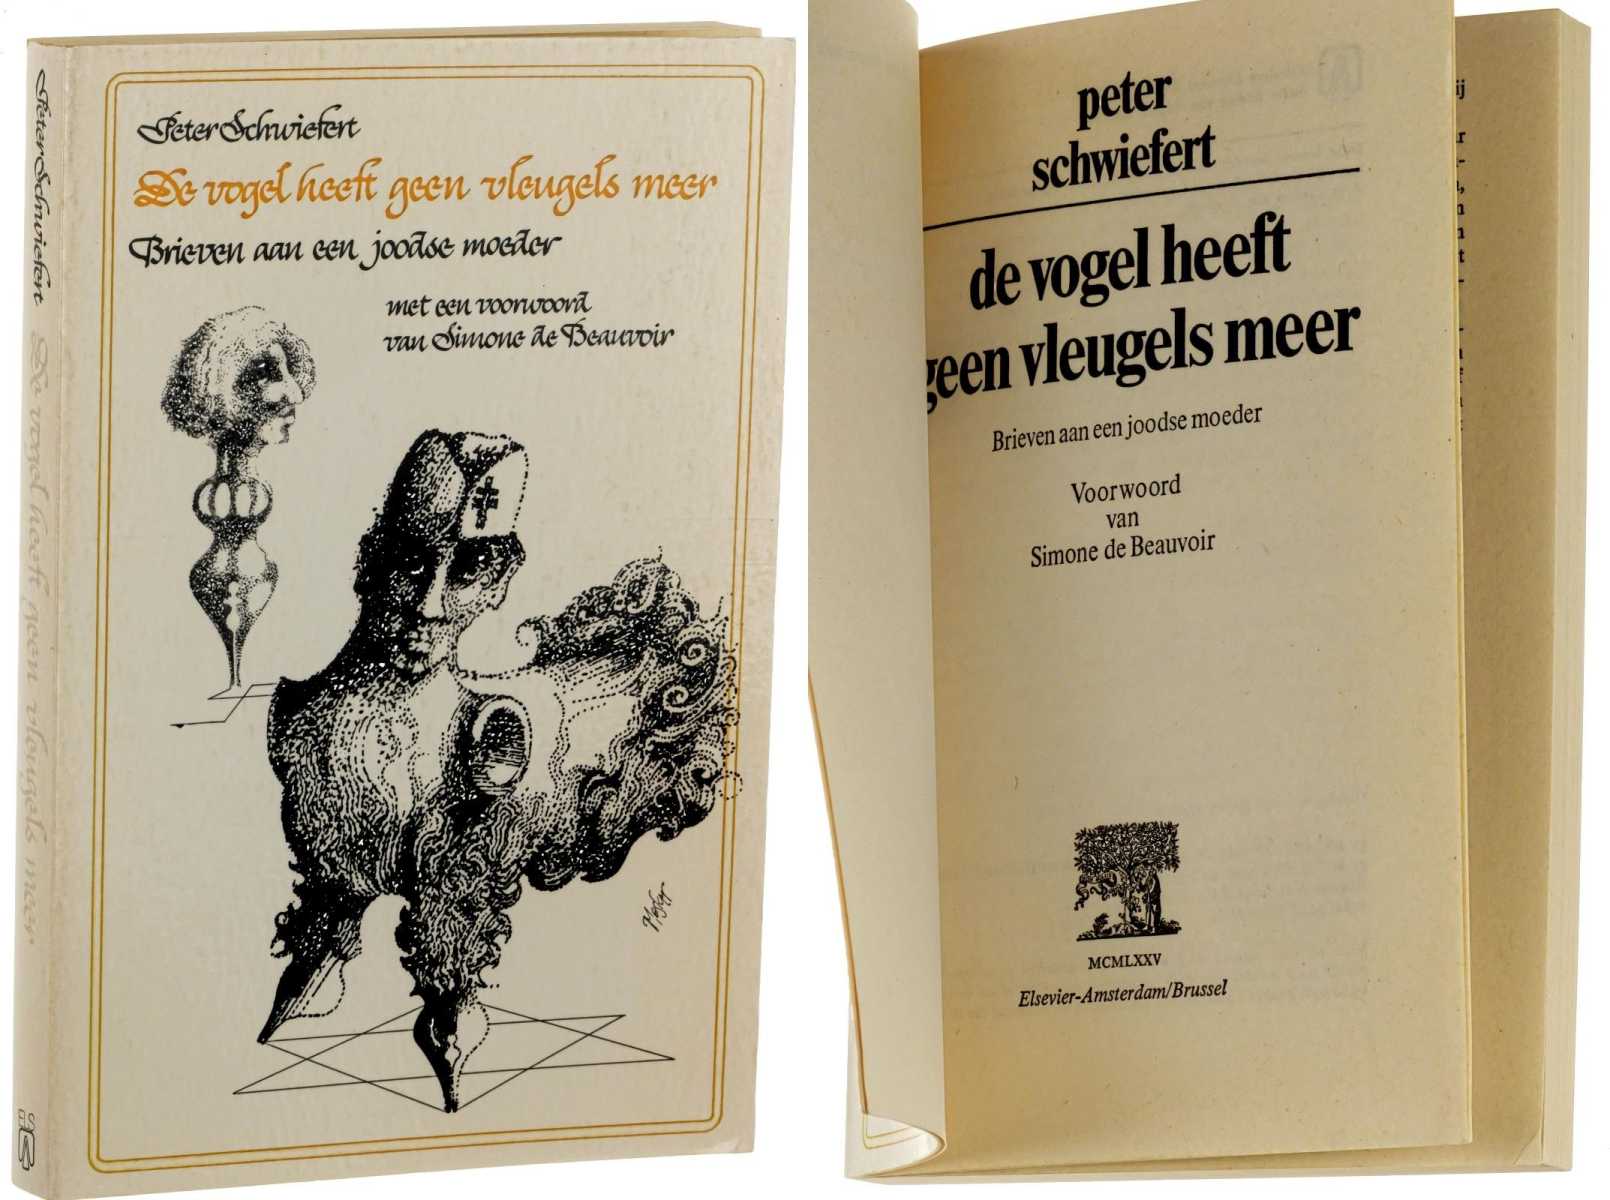 Schwiefert, Peter:  De vogel heeft geen vleugels meer - Brieven aan een joodse moeder. Germaine Greer, Philip Roth, Rudy Kousbroek, G. L. Durlacher. 